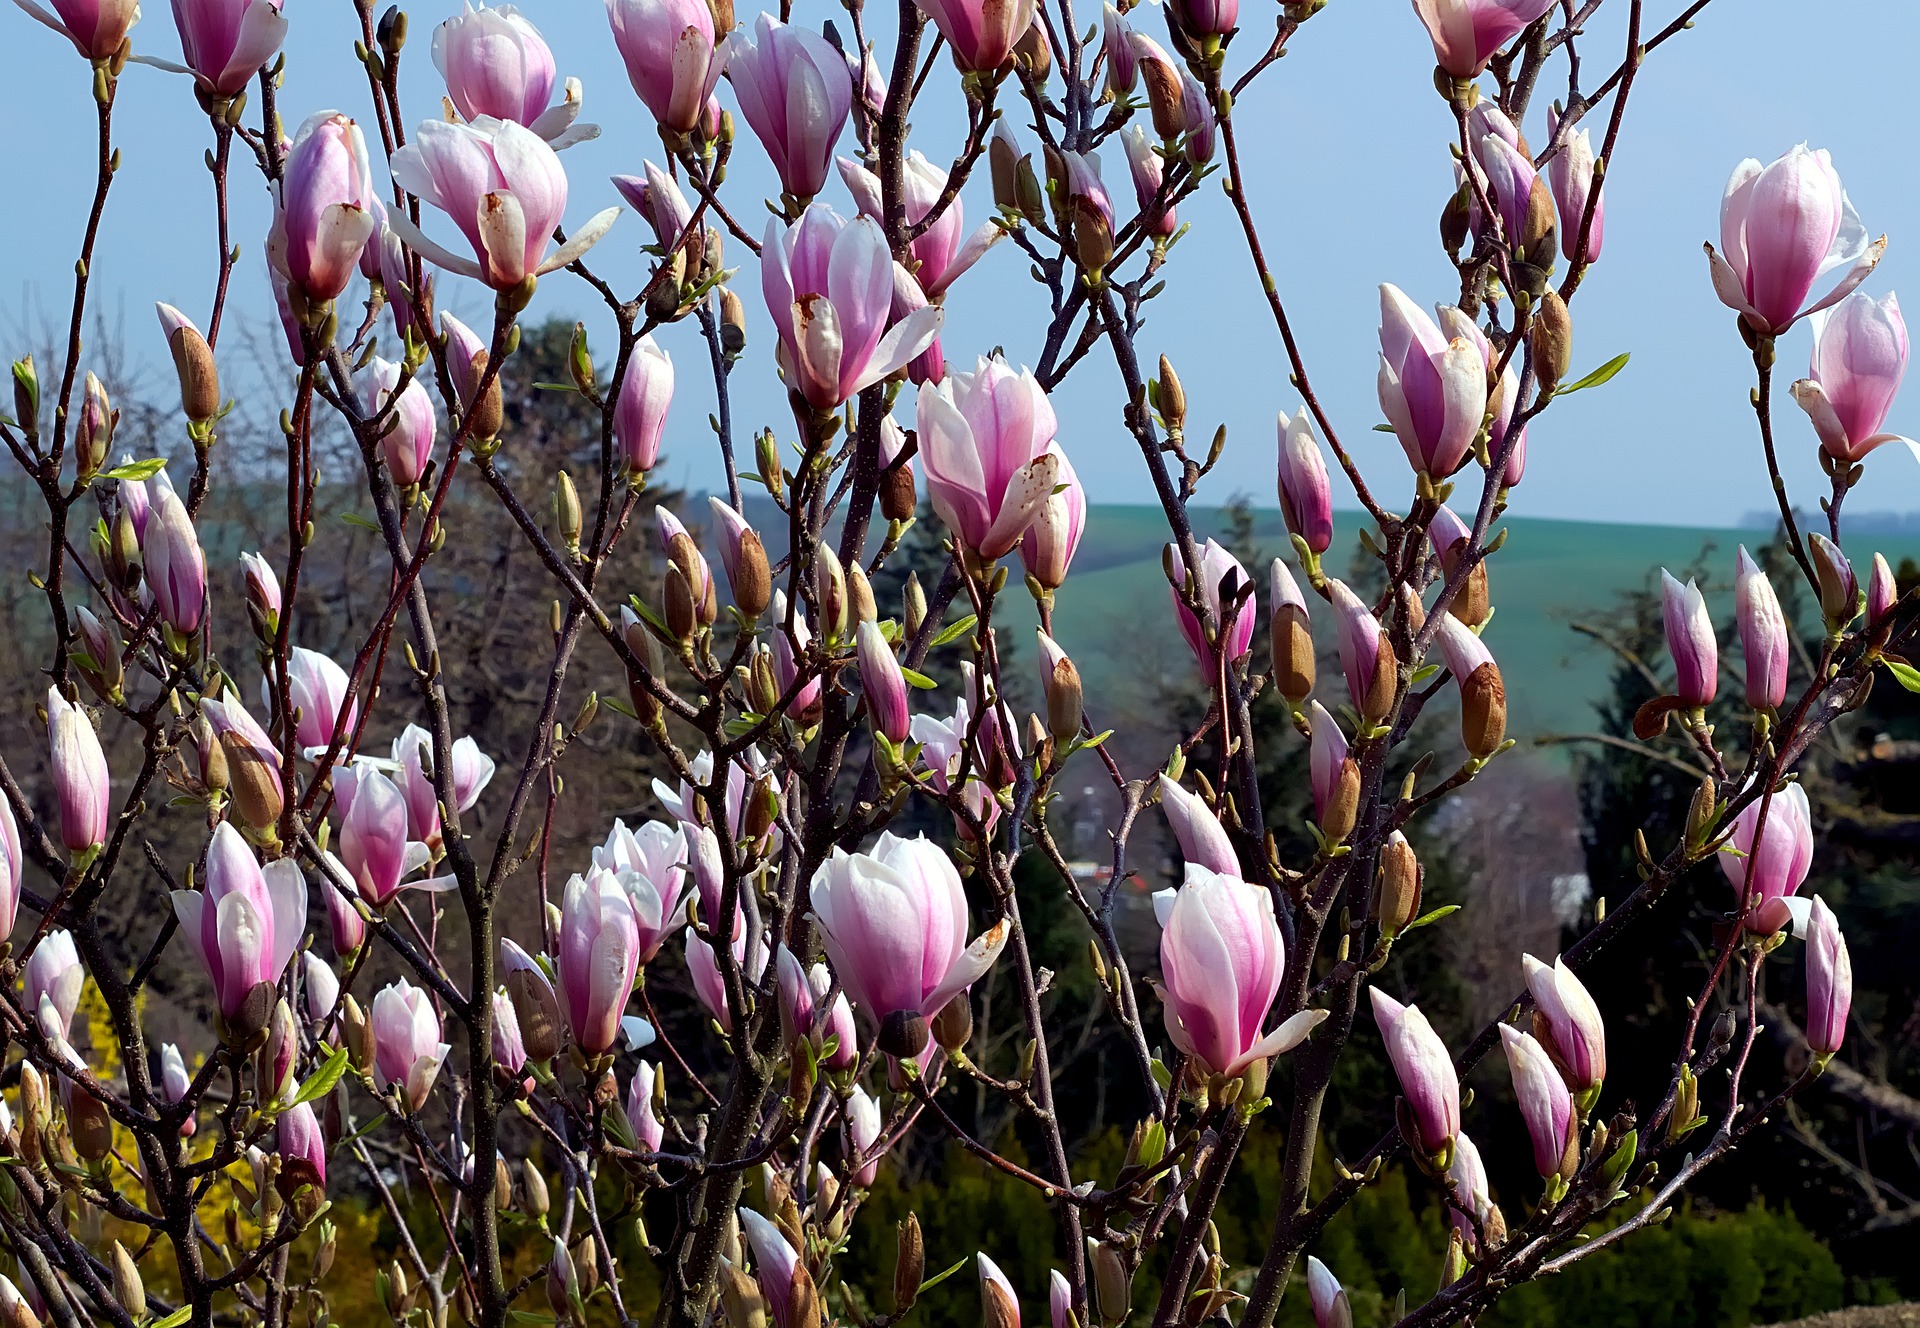 magnolia 2 - La jardinerie de pessicart nice - Livraison a domicile nice 06 plantes vertes terres terreaux jardinage arbres cactus